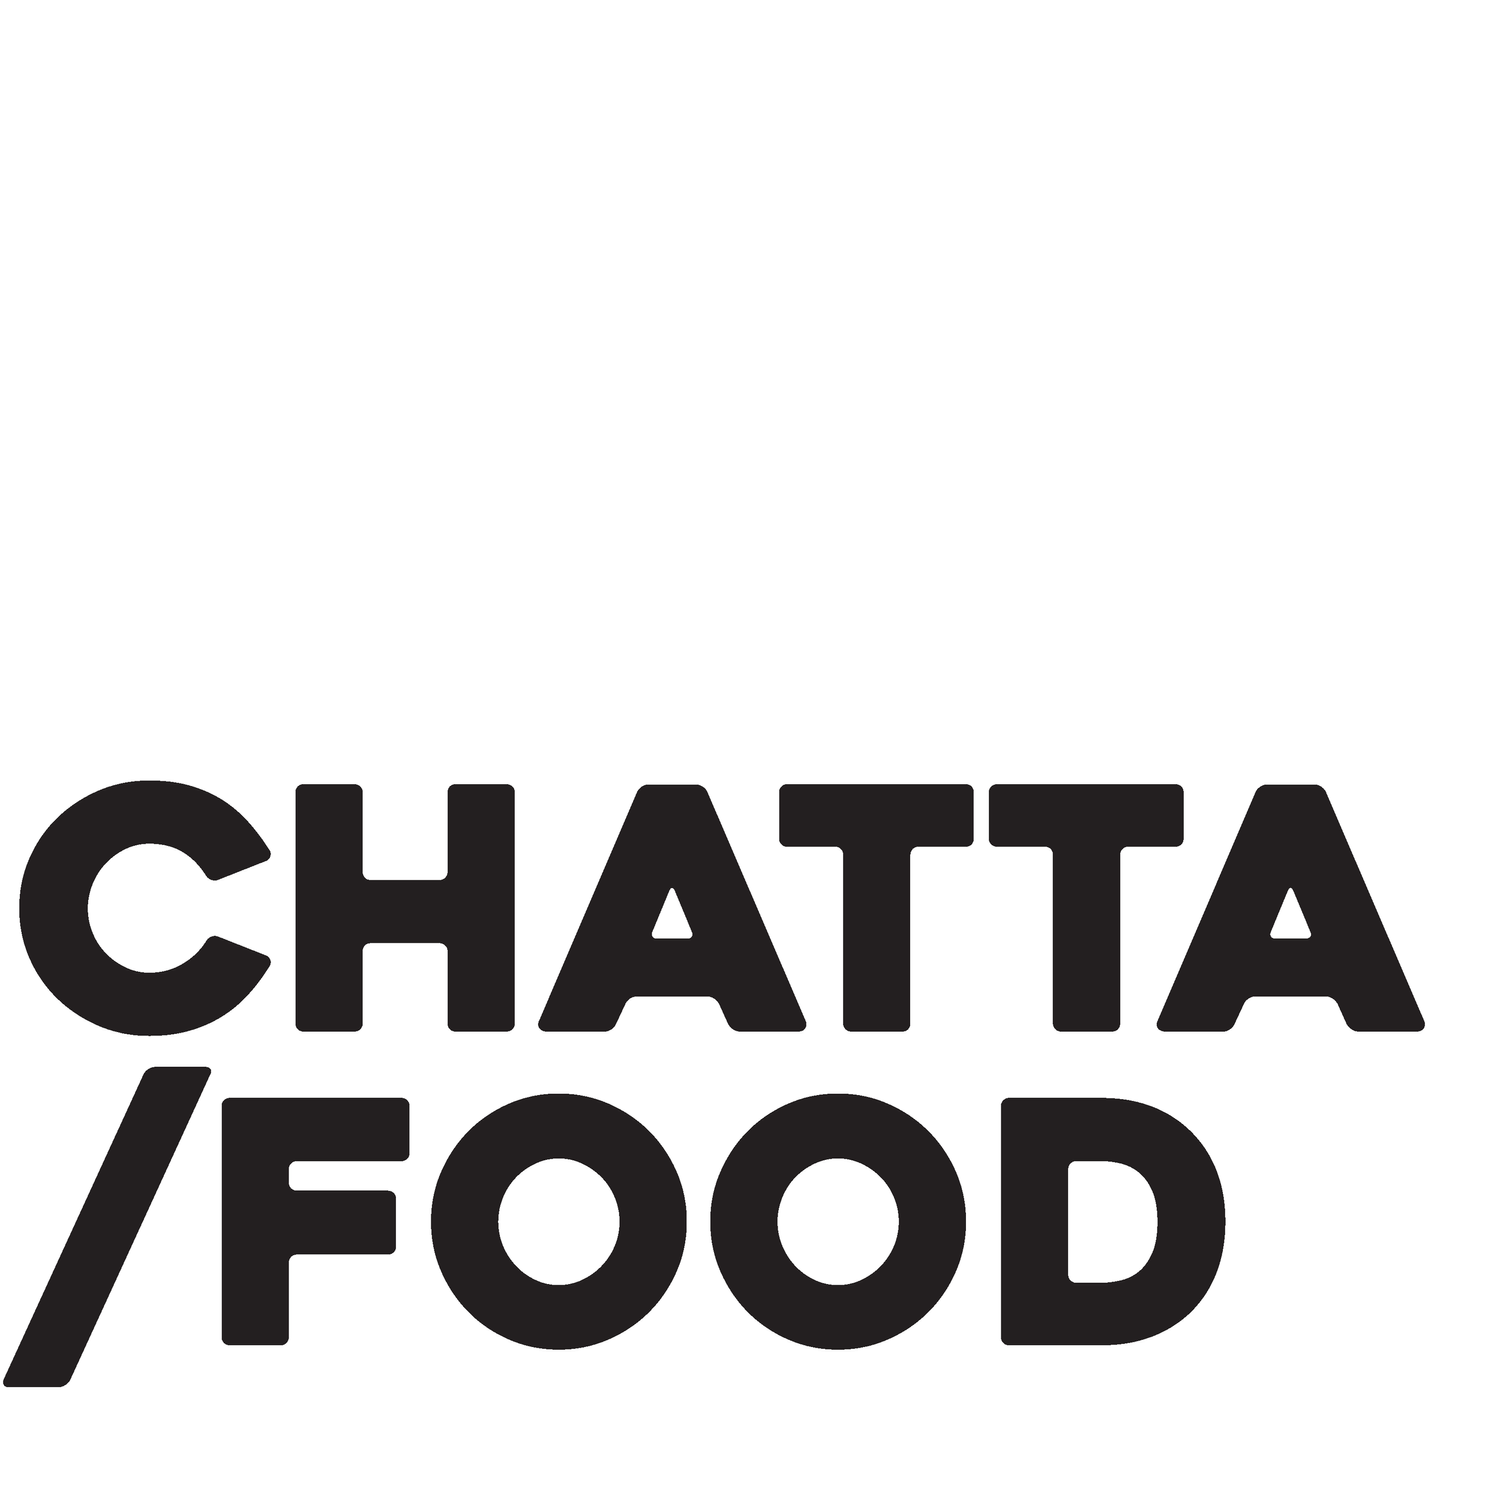 CHATTA FOOD